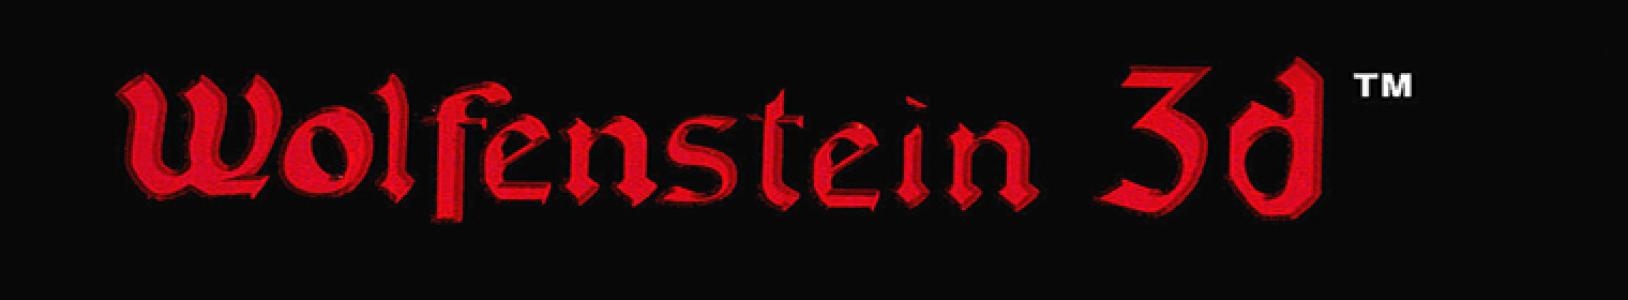 Wolfenstein 3D banner